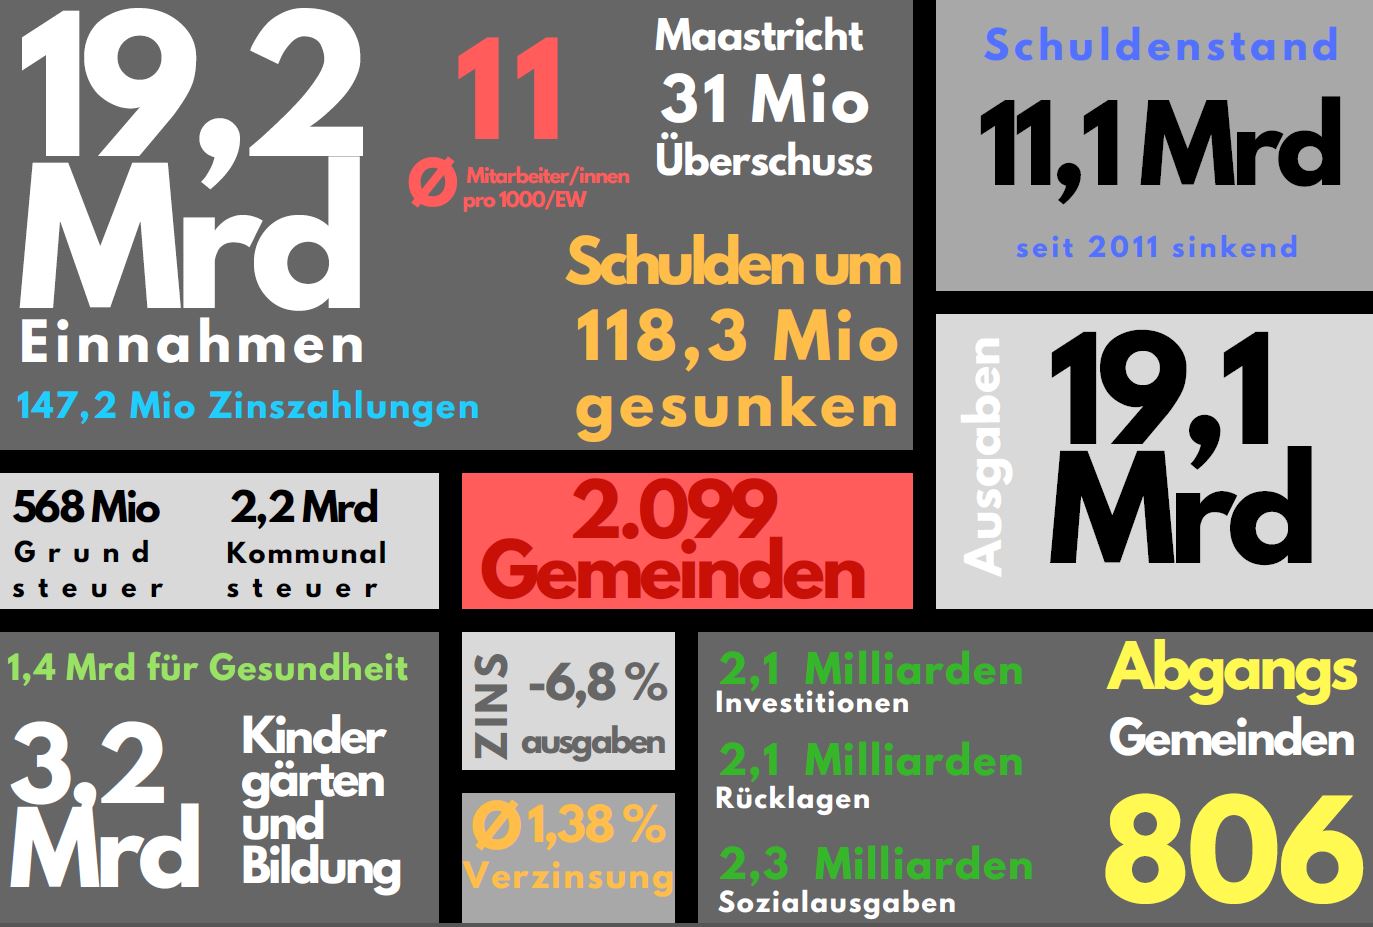 Quelle: Gemeindefinanzbericht, Grafik: Gemeindebund 